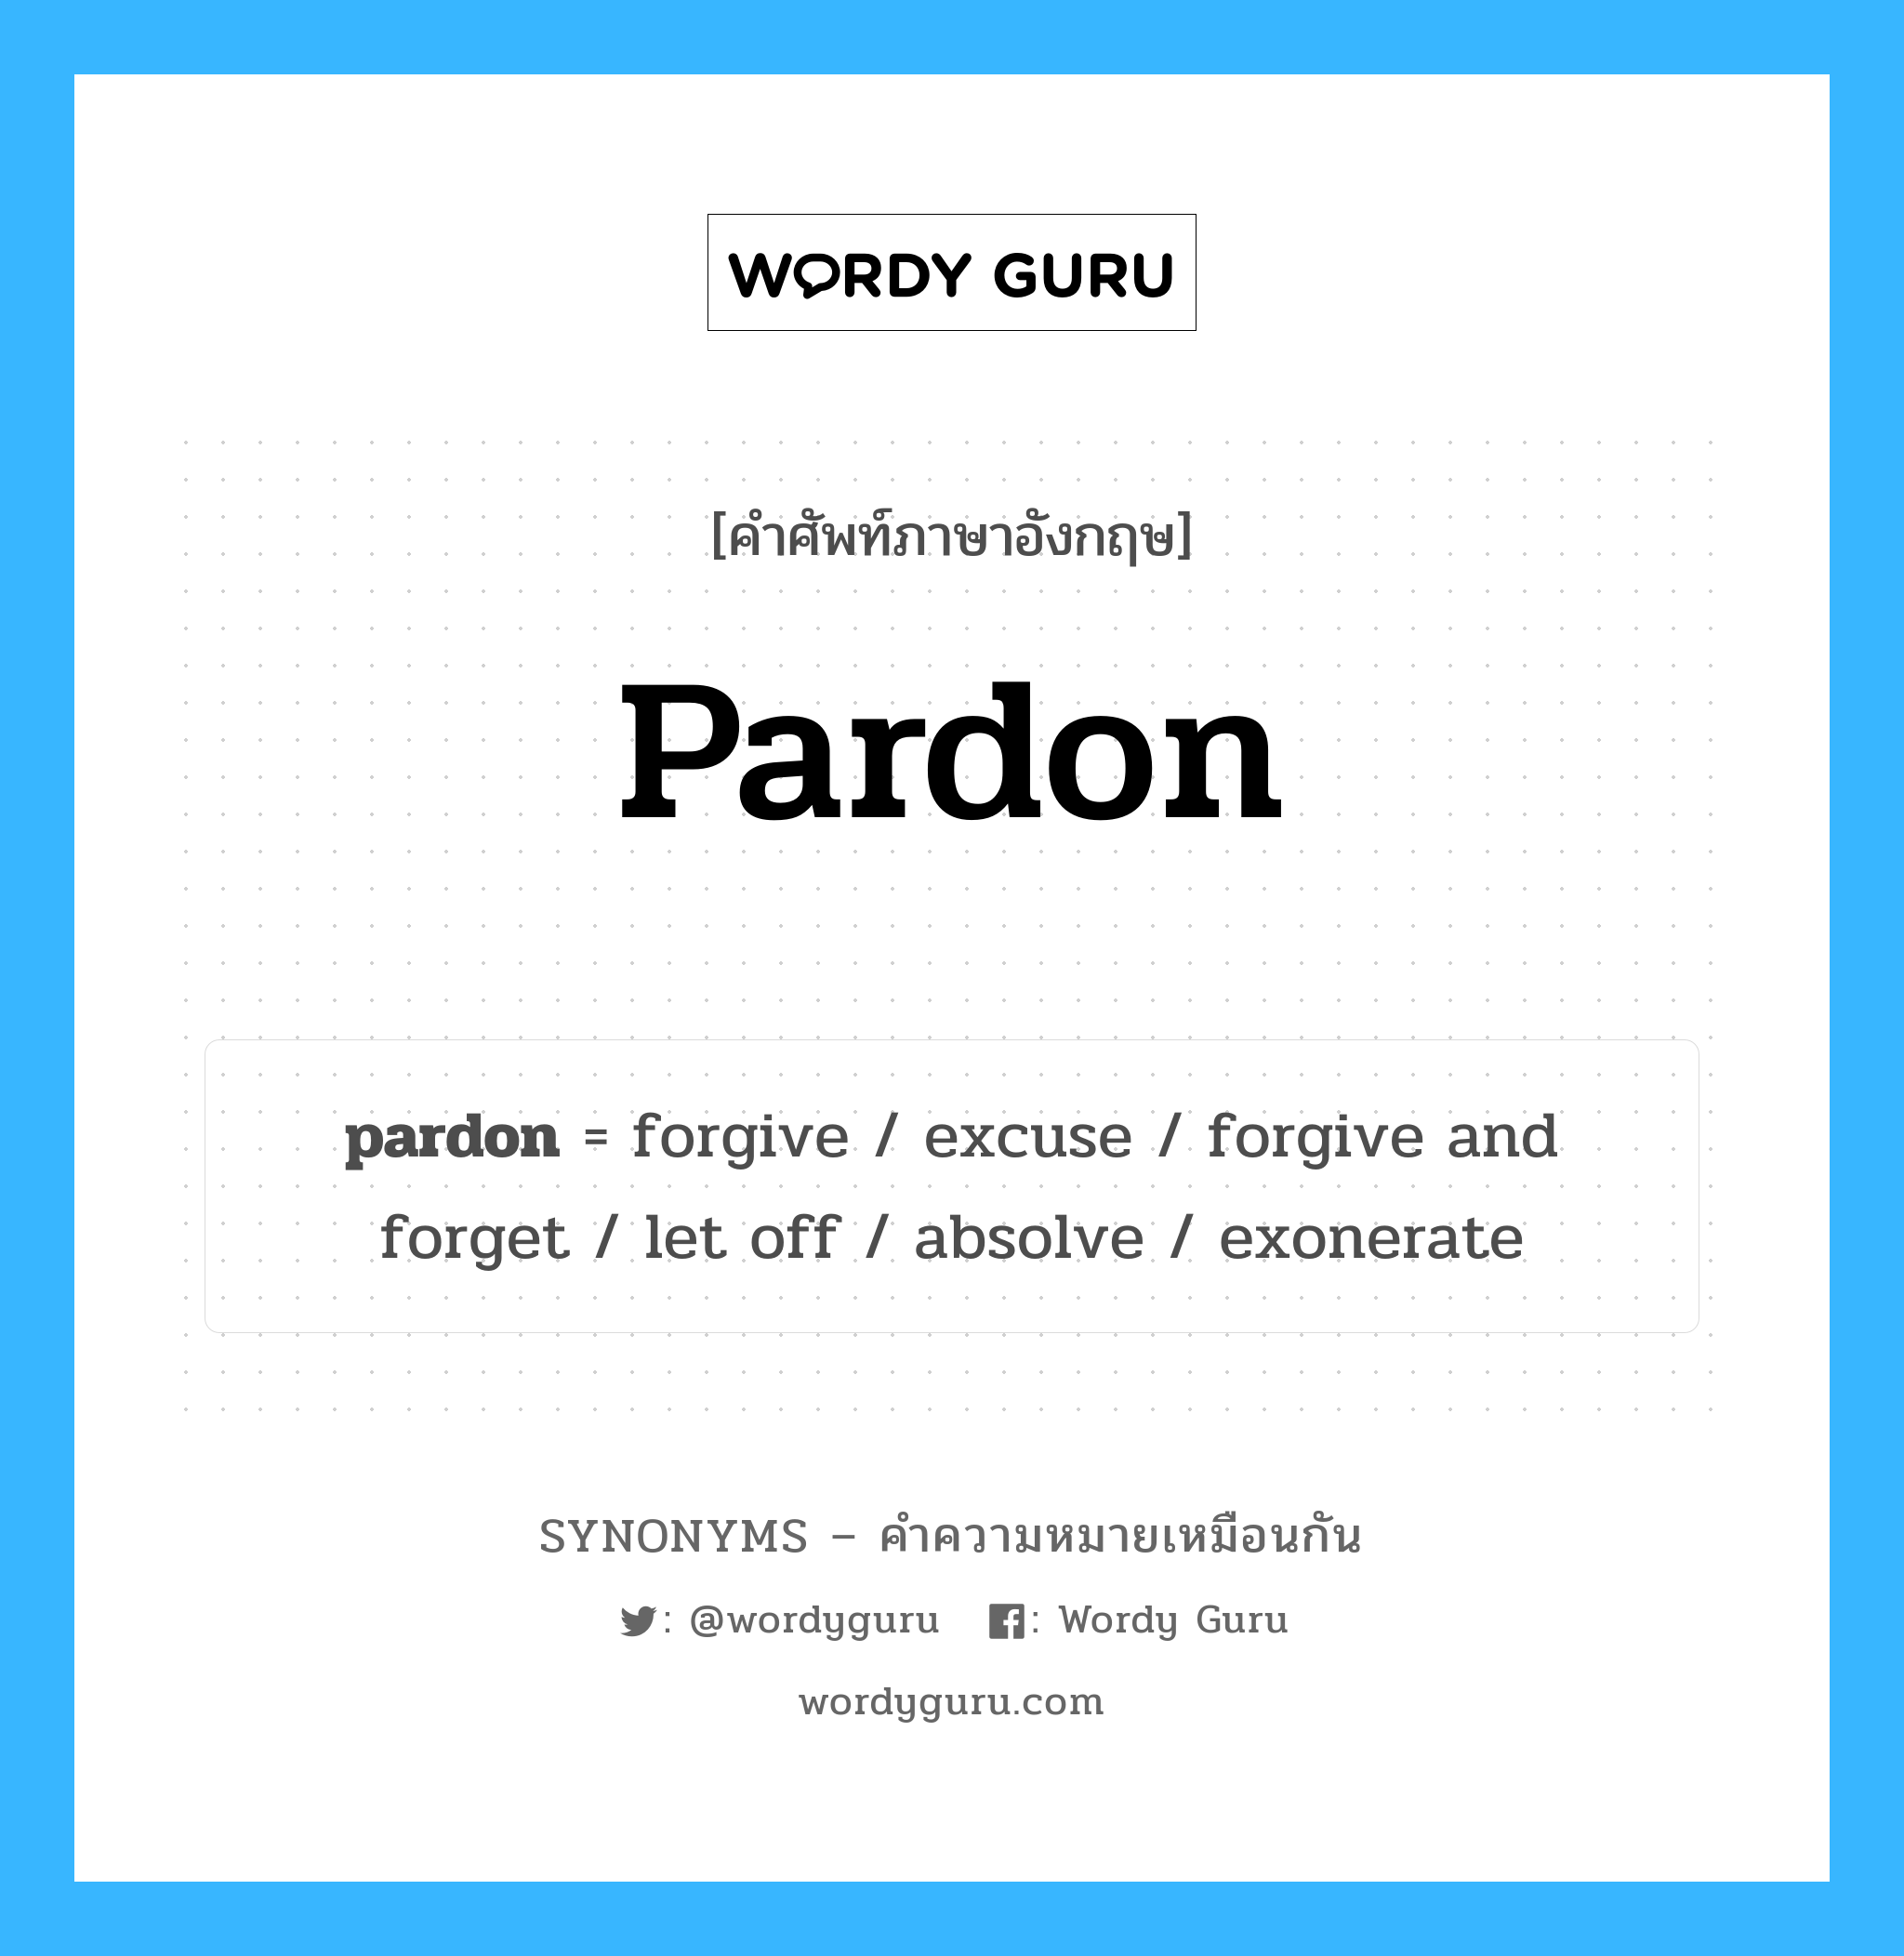 exonerate เป็นหนึ่งใน pardon และมีคำอื่น ๆ อีกดังนี้, คำศัพท์ภาษาอังกฤษ exonerate ความหมายคล้ายกันกับ pardon แปลว่า exonerate หมวด pardon